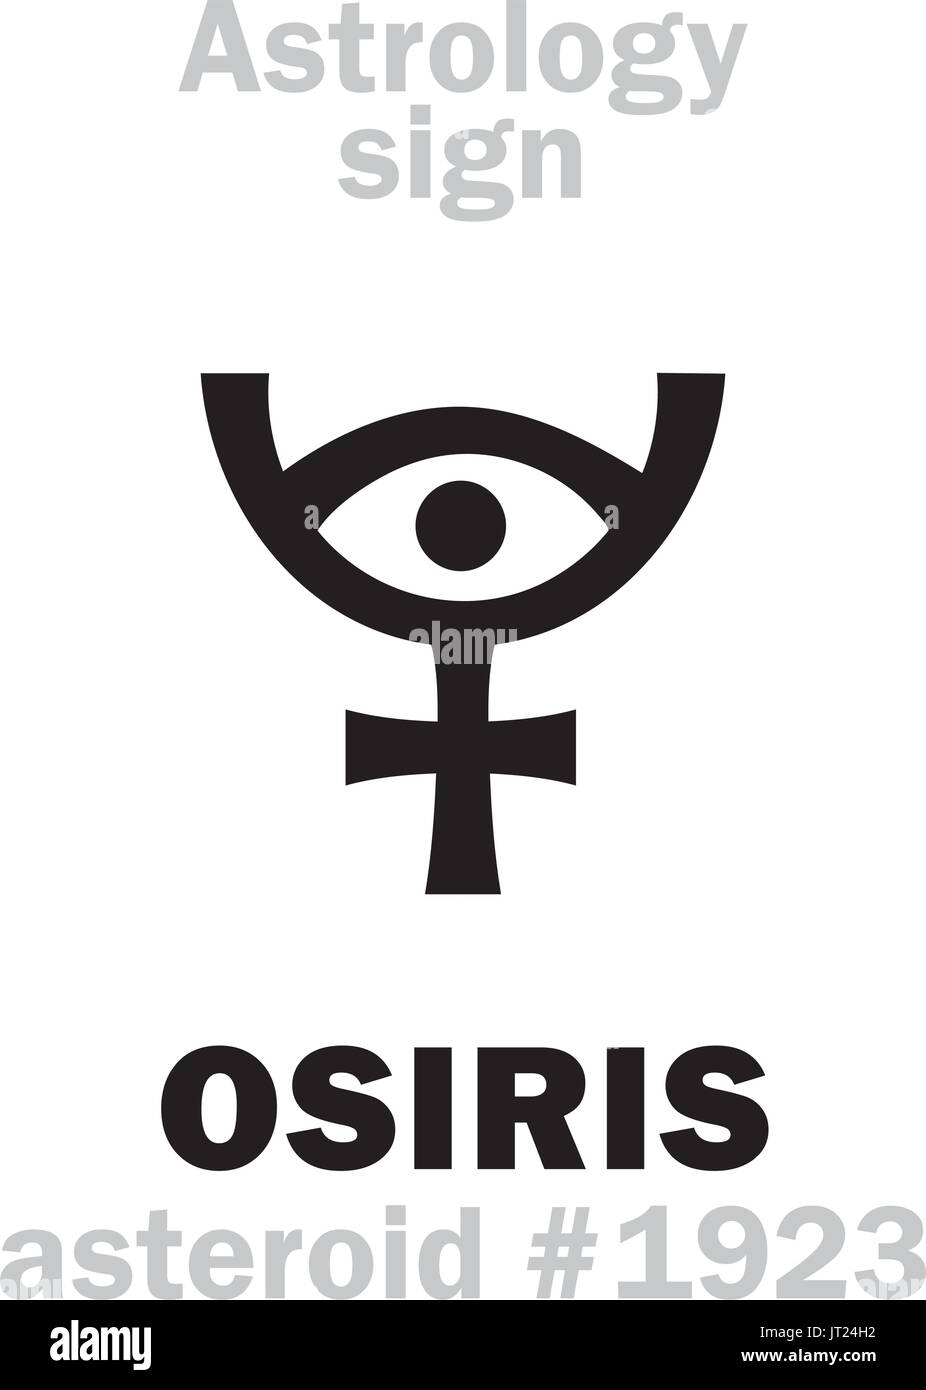 Alfabeto astrologia: Osiride (Usir), asteroide #1923. Caratteri geroglifici segno (simbolo unico). Illustrazione Vettoriale